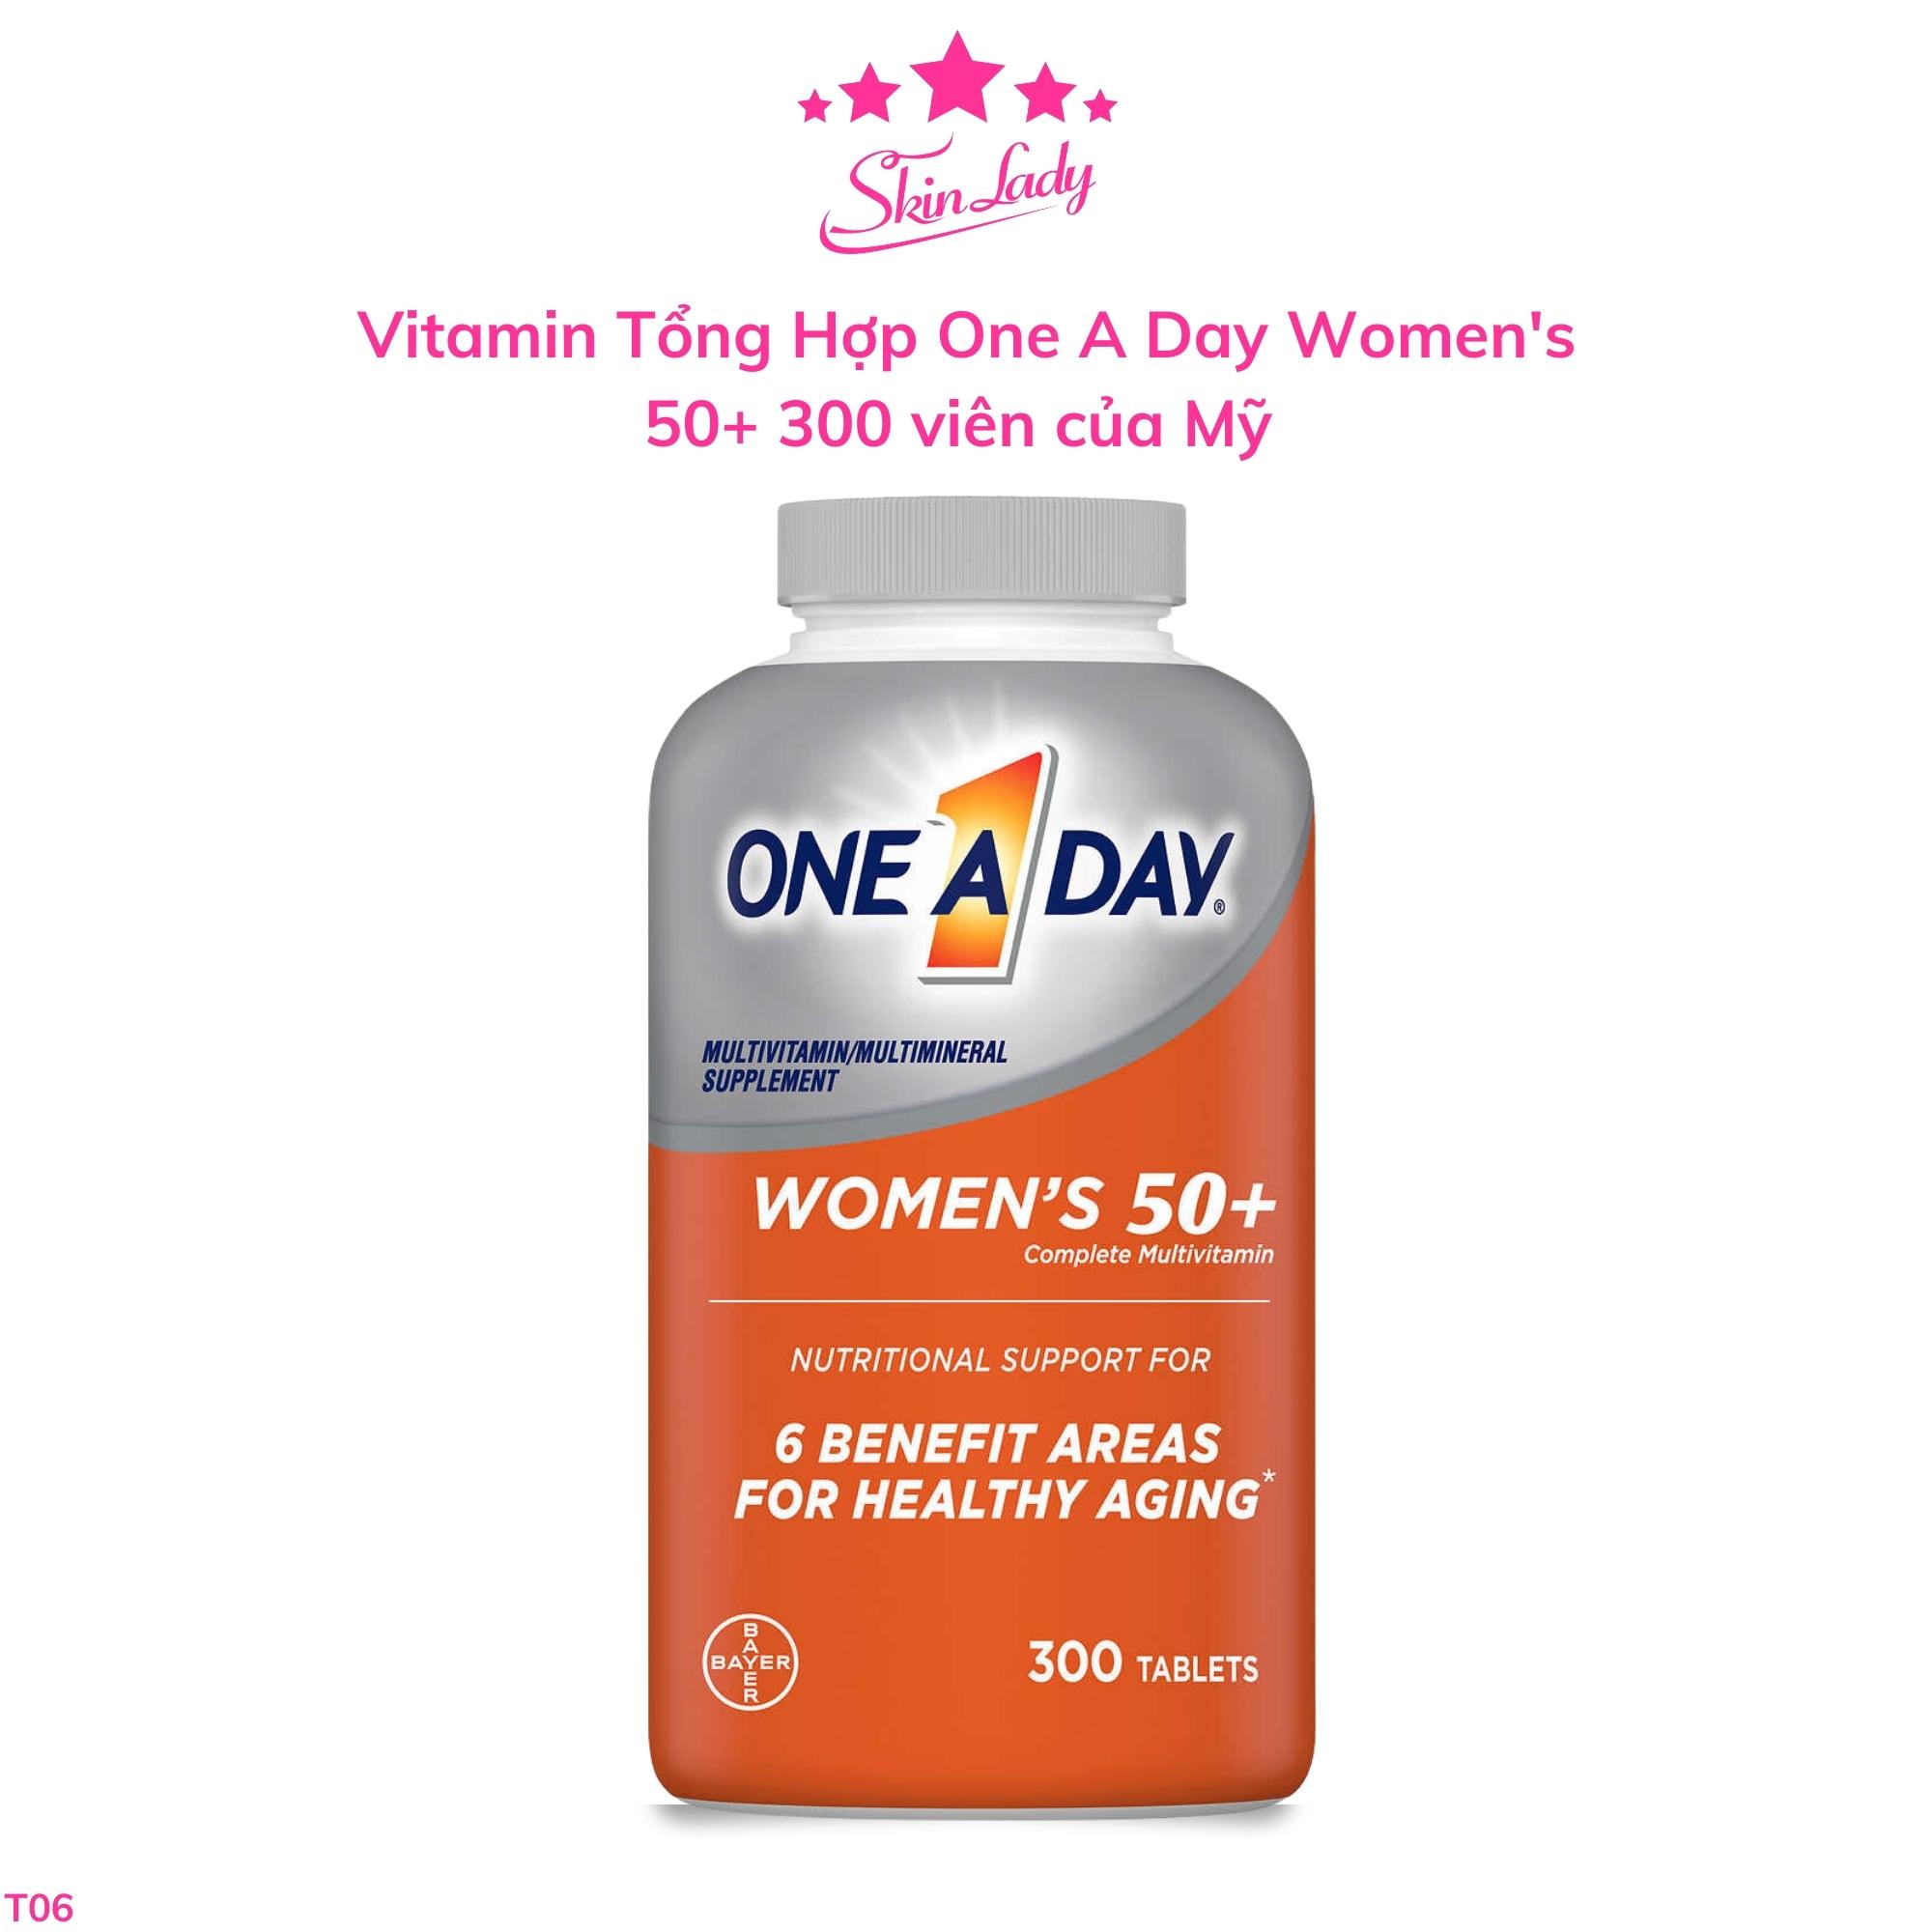 Vitamin Tổng Hợp One A Day Women s 50+ 300 viên của Mỹ Skinlady